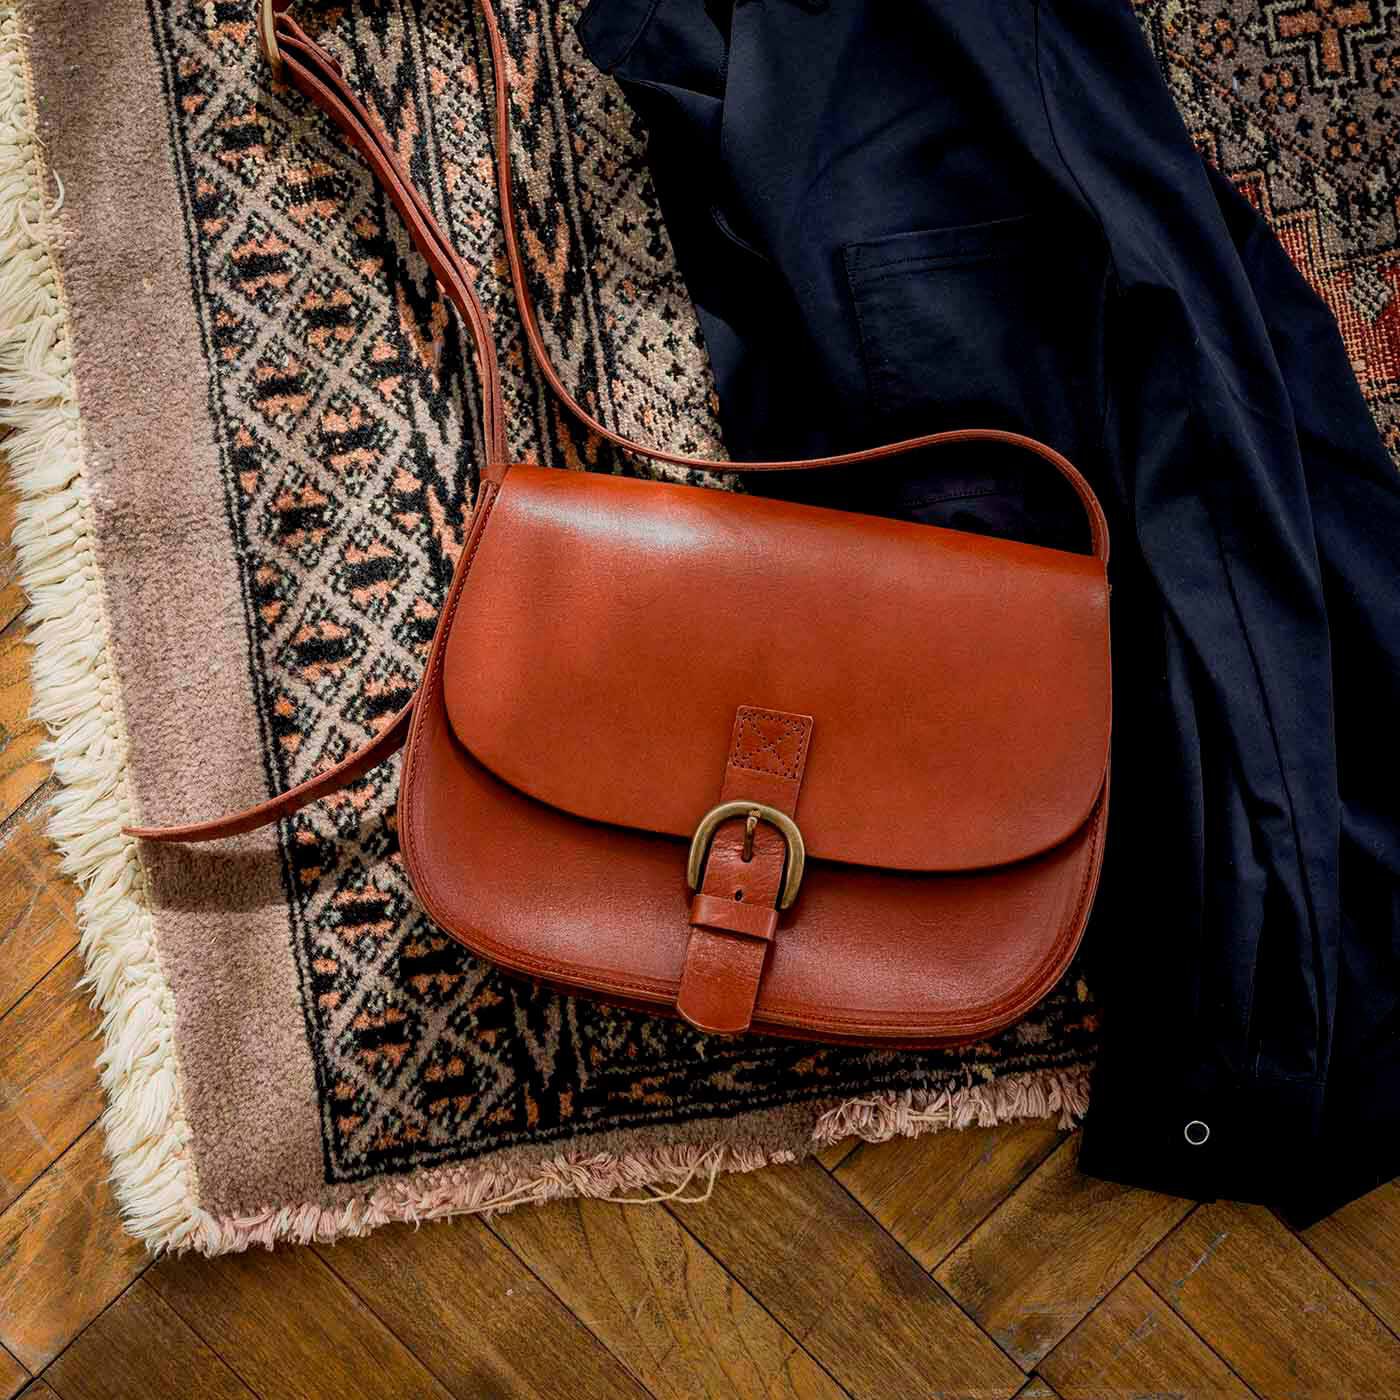 ＆Stories|福岡の鞄作家と作った　職人本革のフォートバッグ〈レッドブラウン〉|福岡の鞄作家の名作鞄を、クリエイティブディレクター坪内次郎さんのオリジナル仕様にアレンジしたスペシャルモデル。